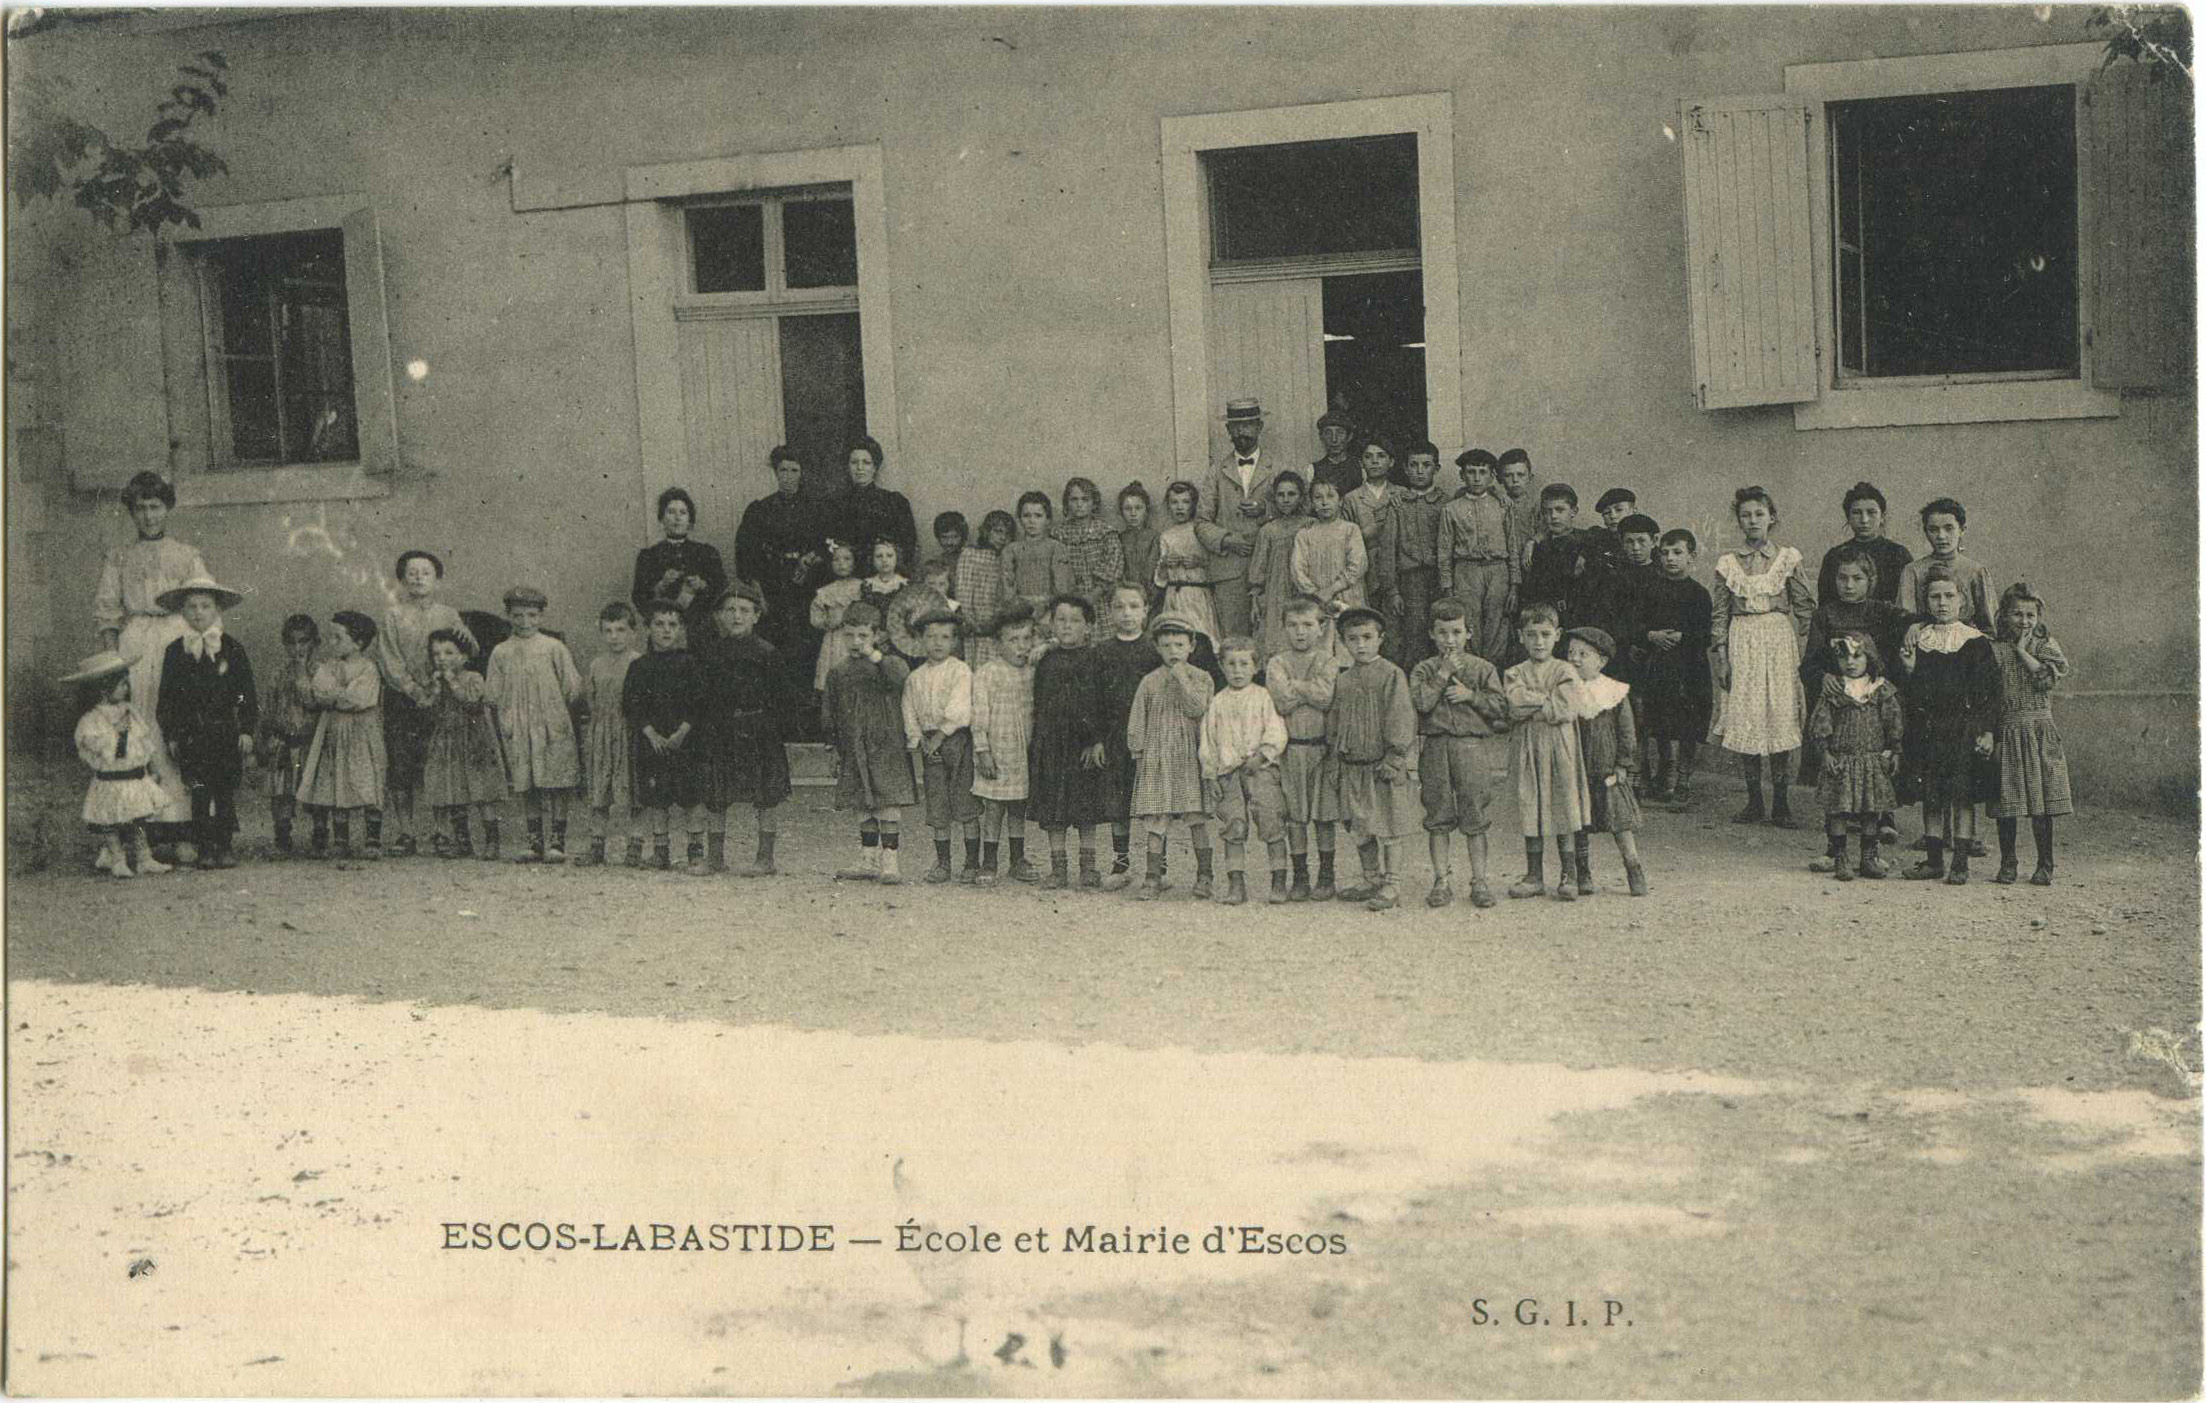 Escos - École et Mairie d'Escos